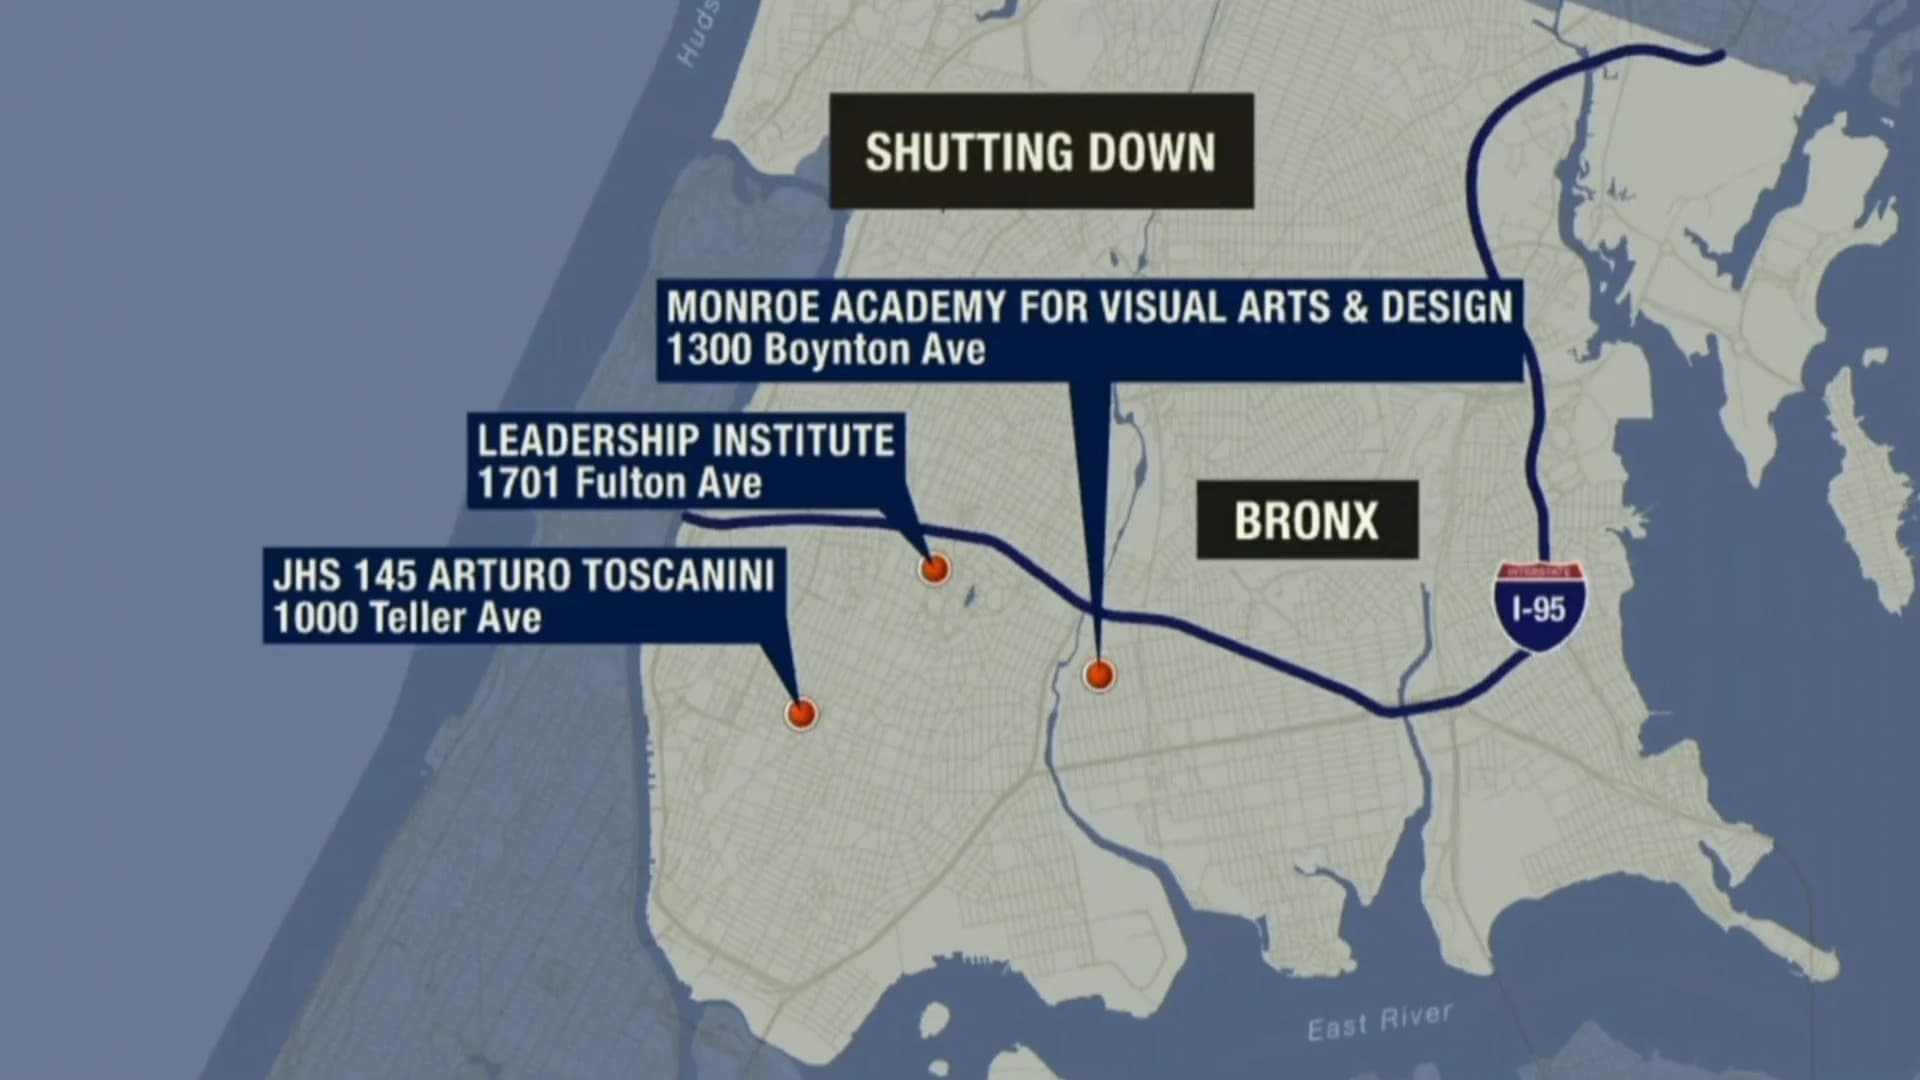 3 Bronx schools scheduled to close